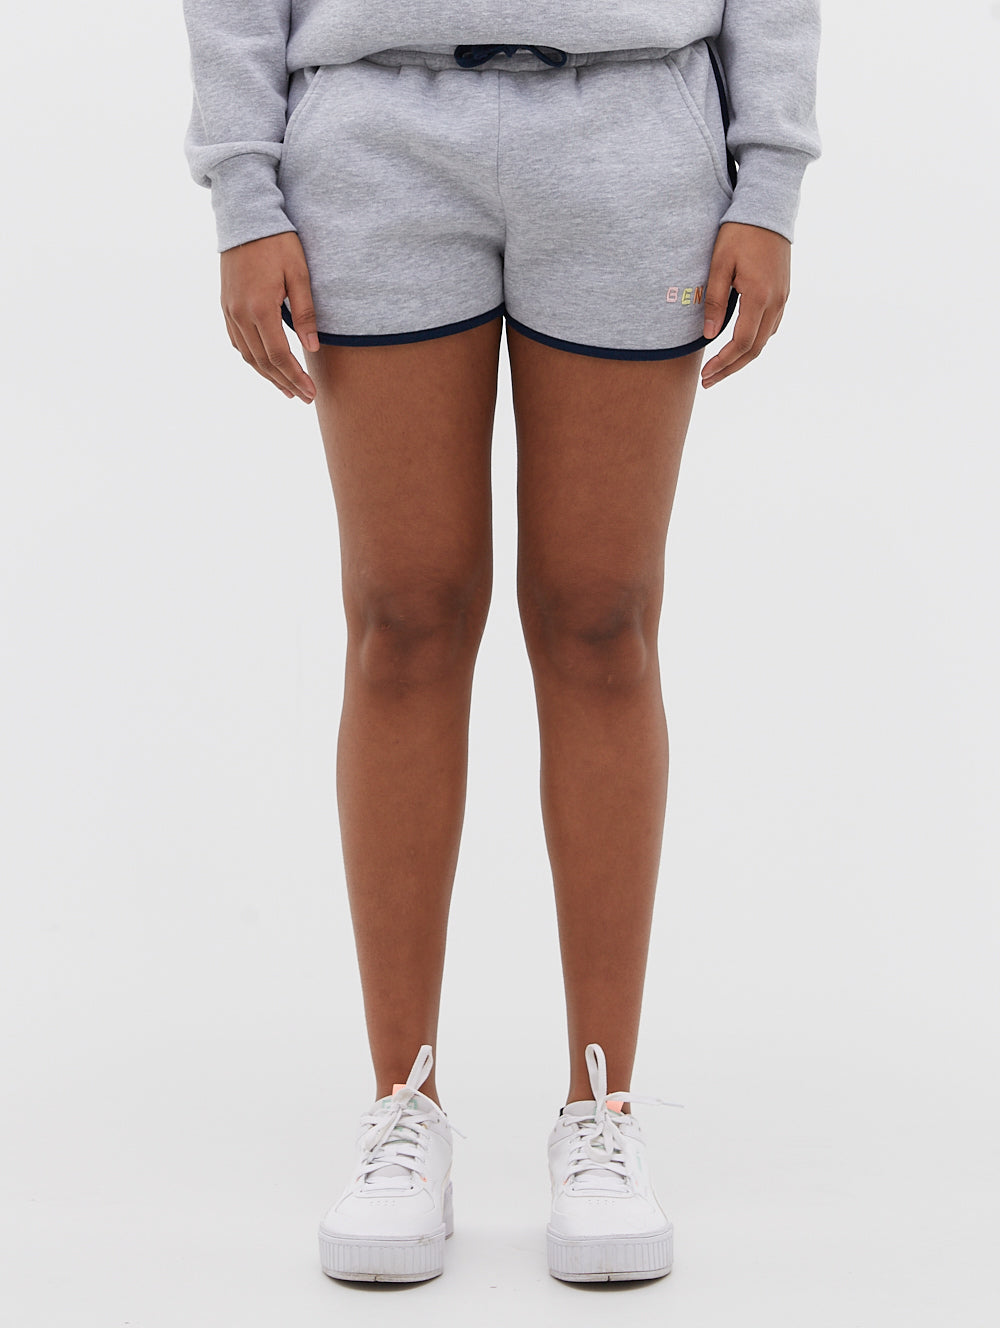 Starling Fleece Shorts - BN4R123357